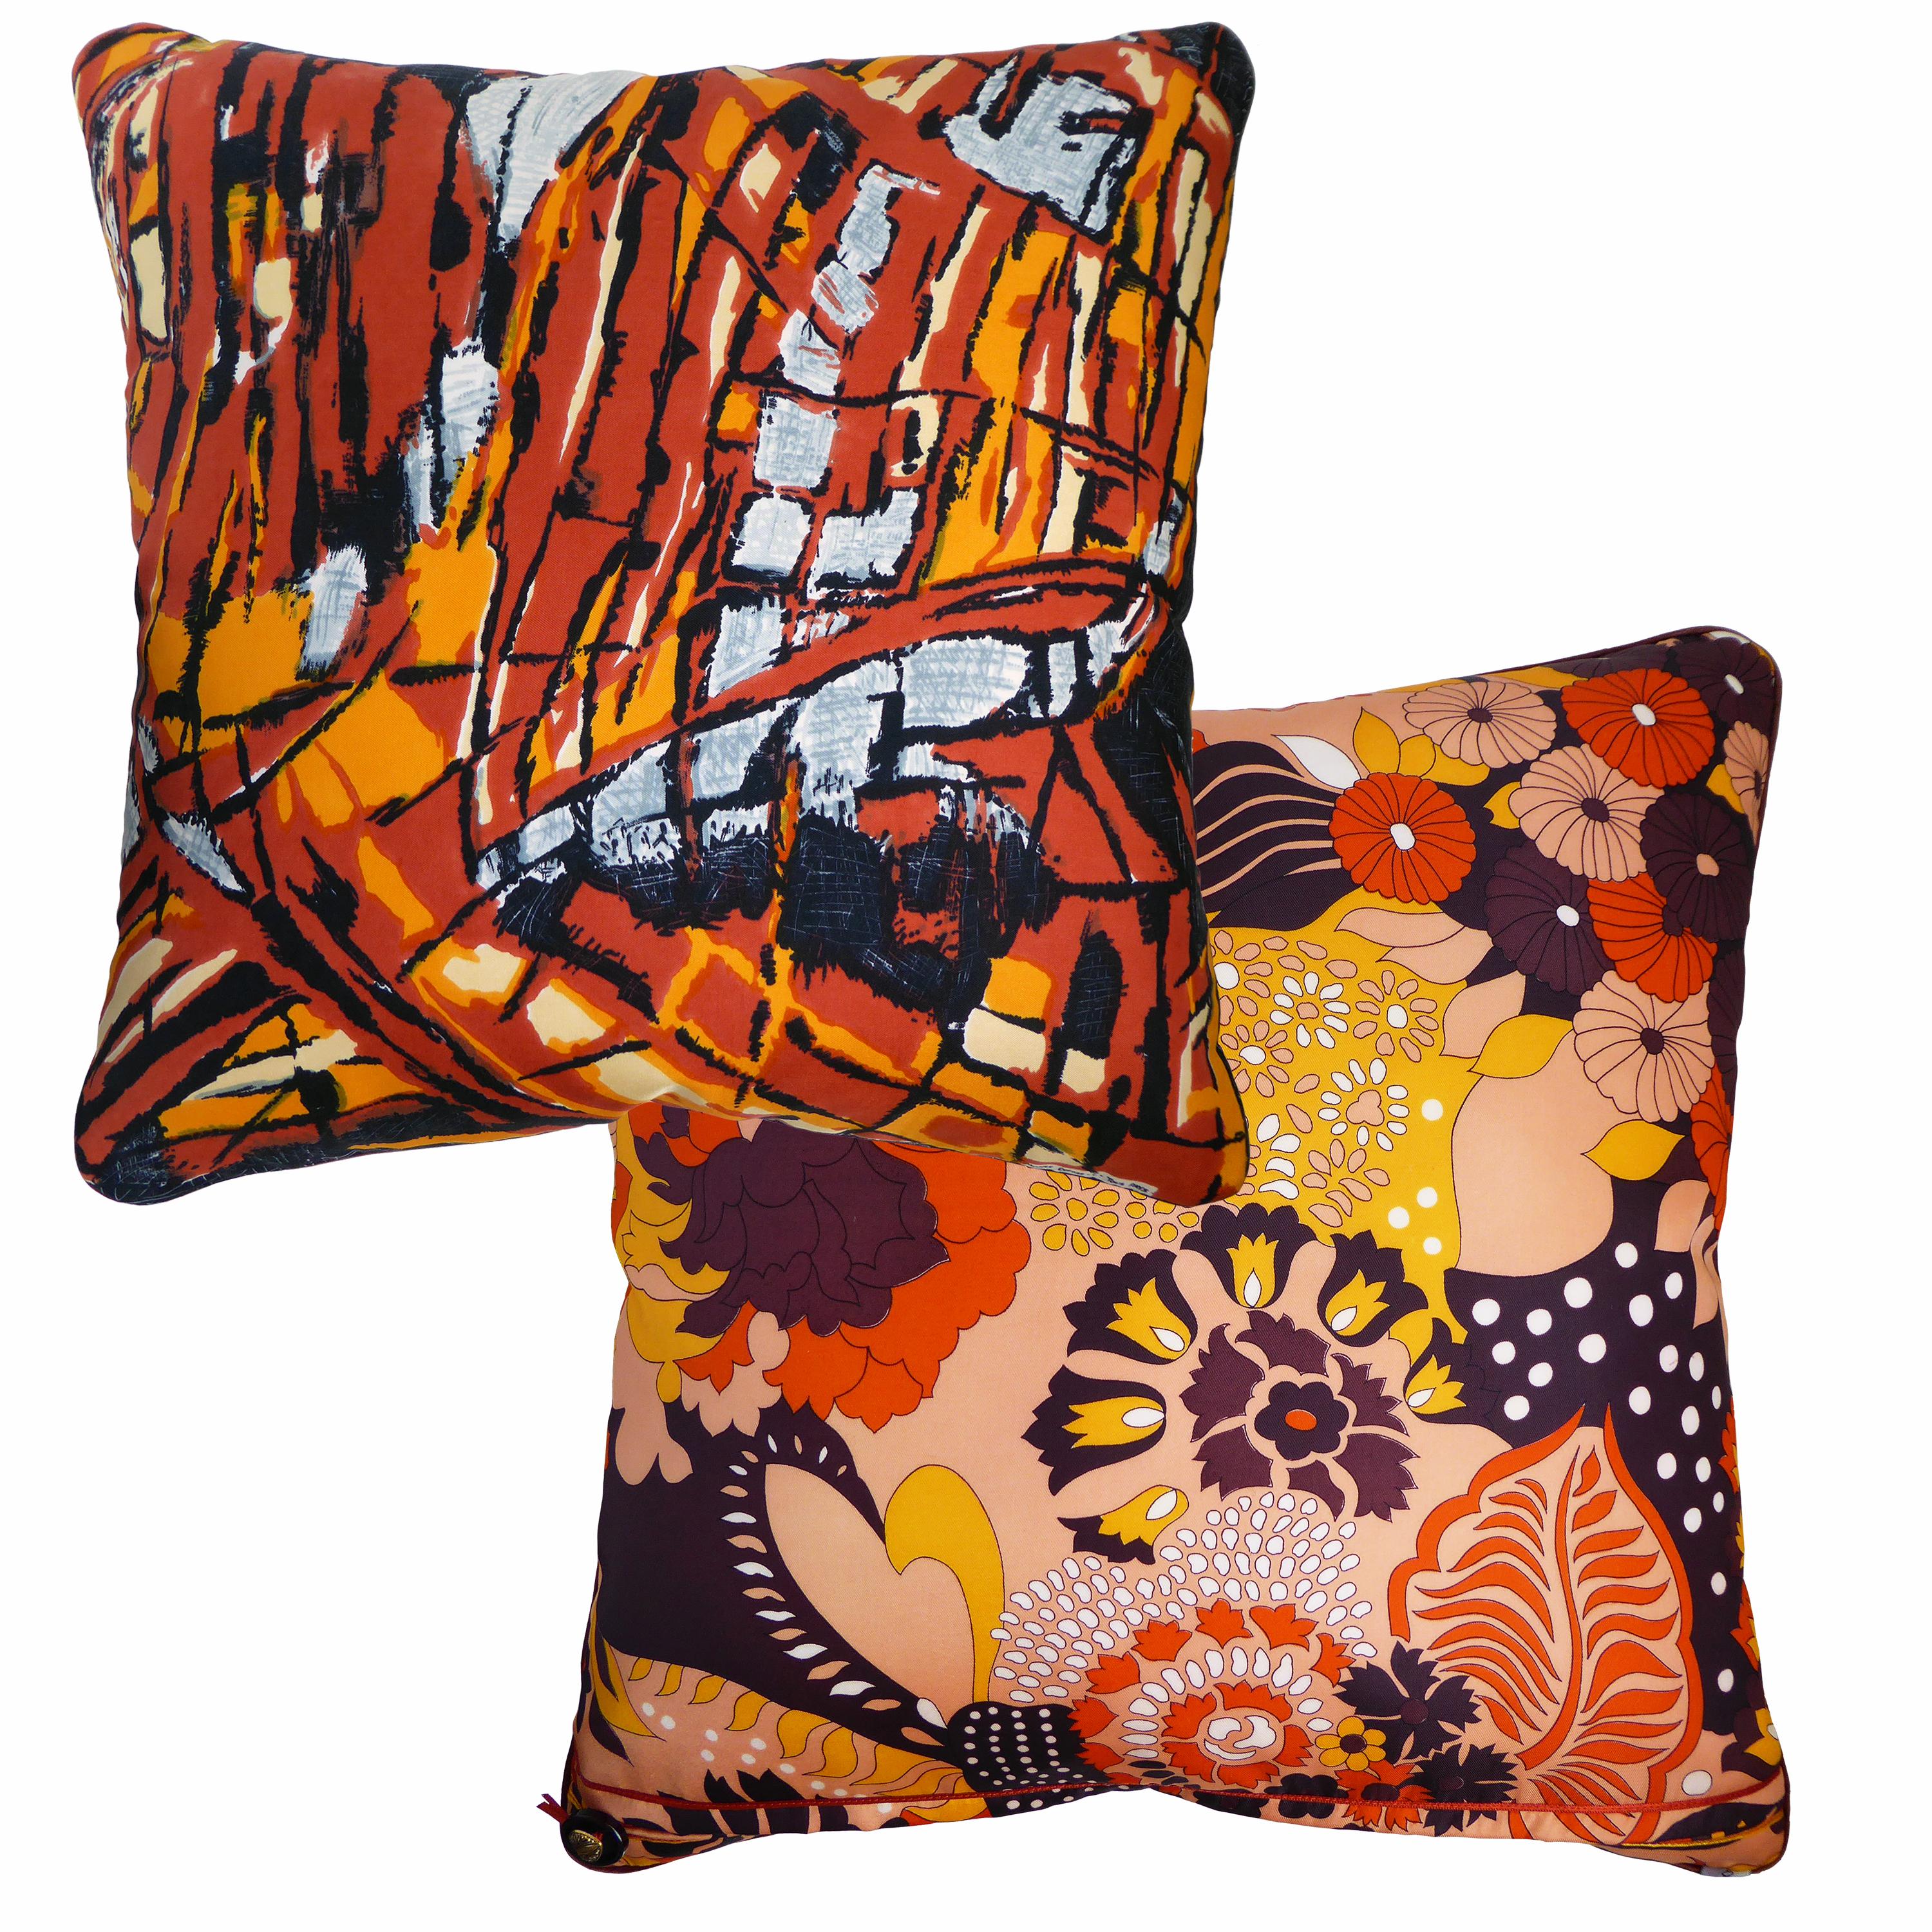 Organic Modern Vintage Cushions, Bespoke-Made Luxury Silk Pillow 'Modele Despose', Made in UK